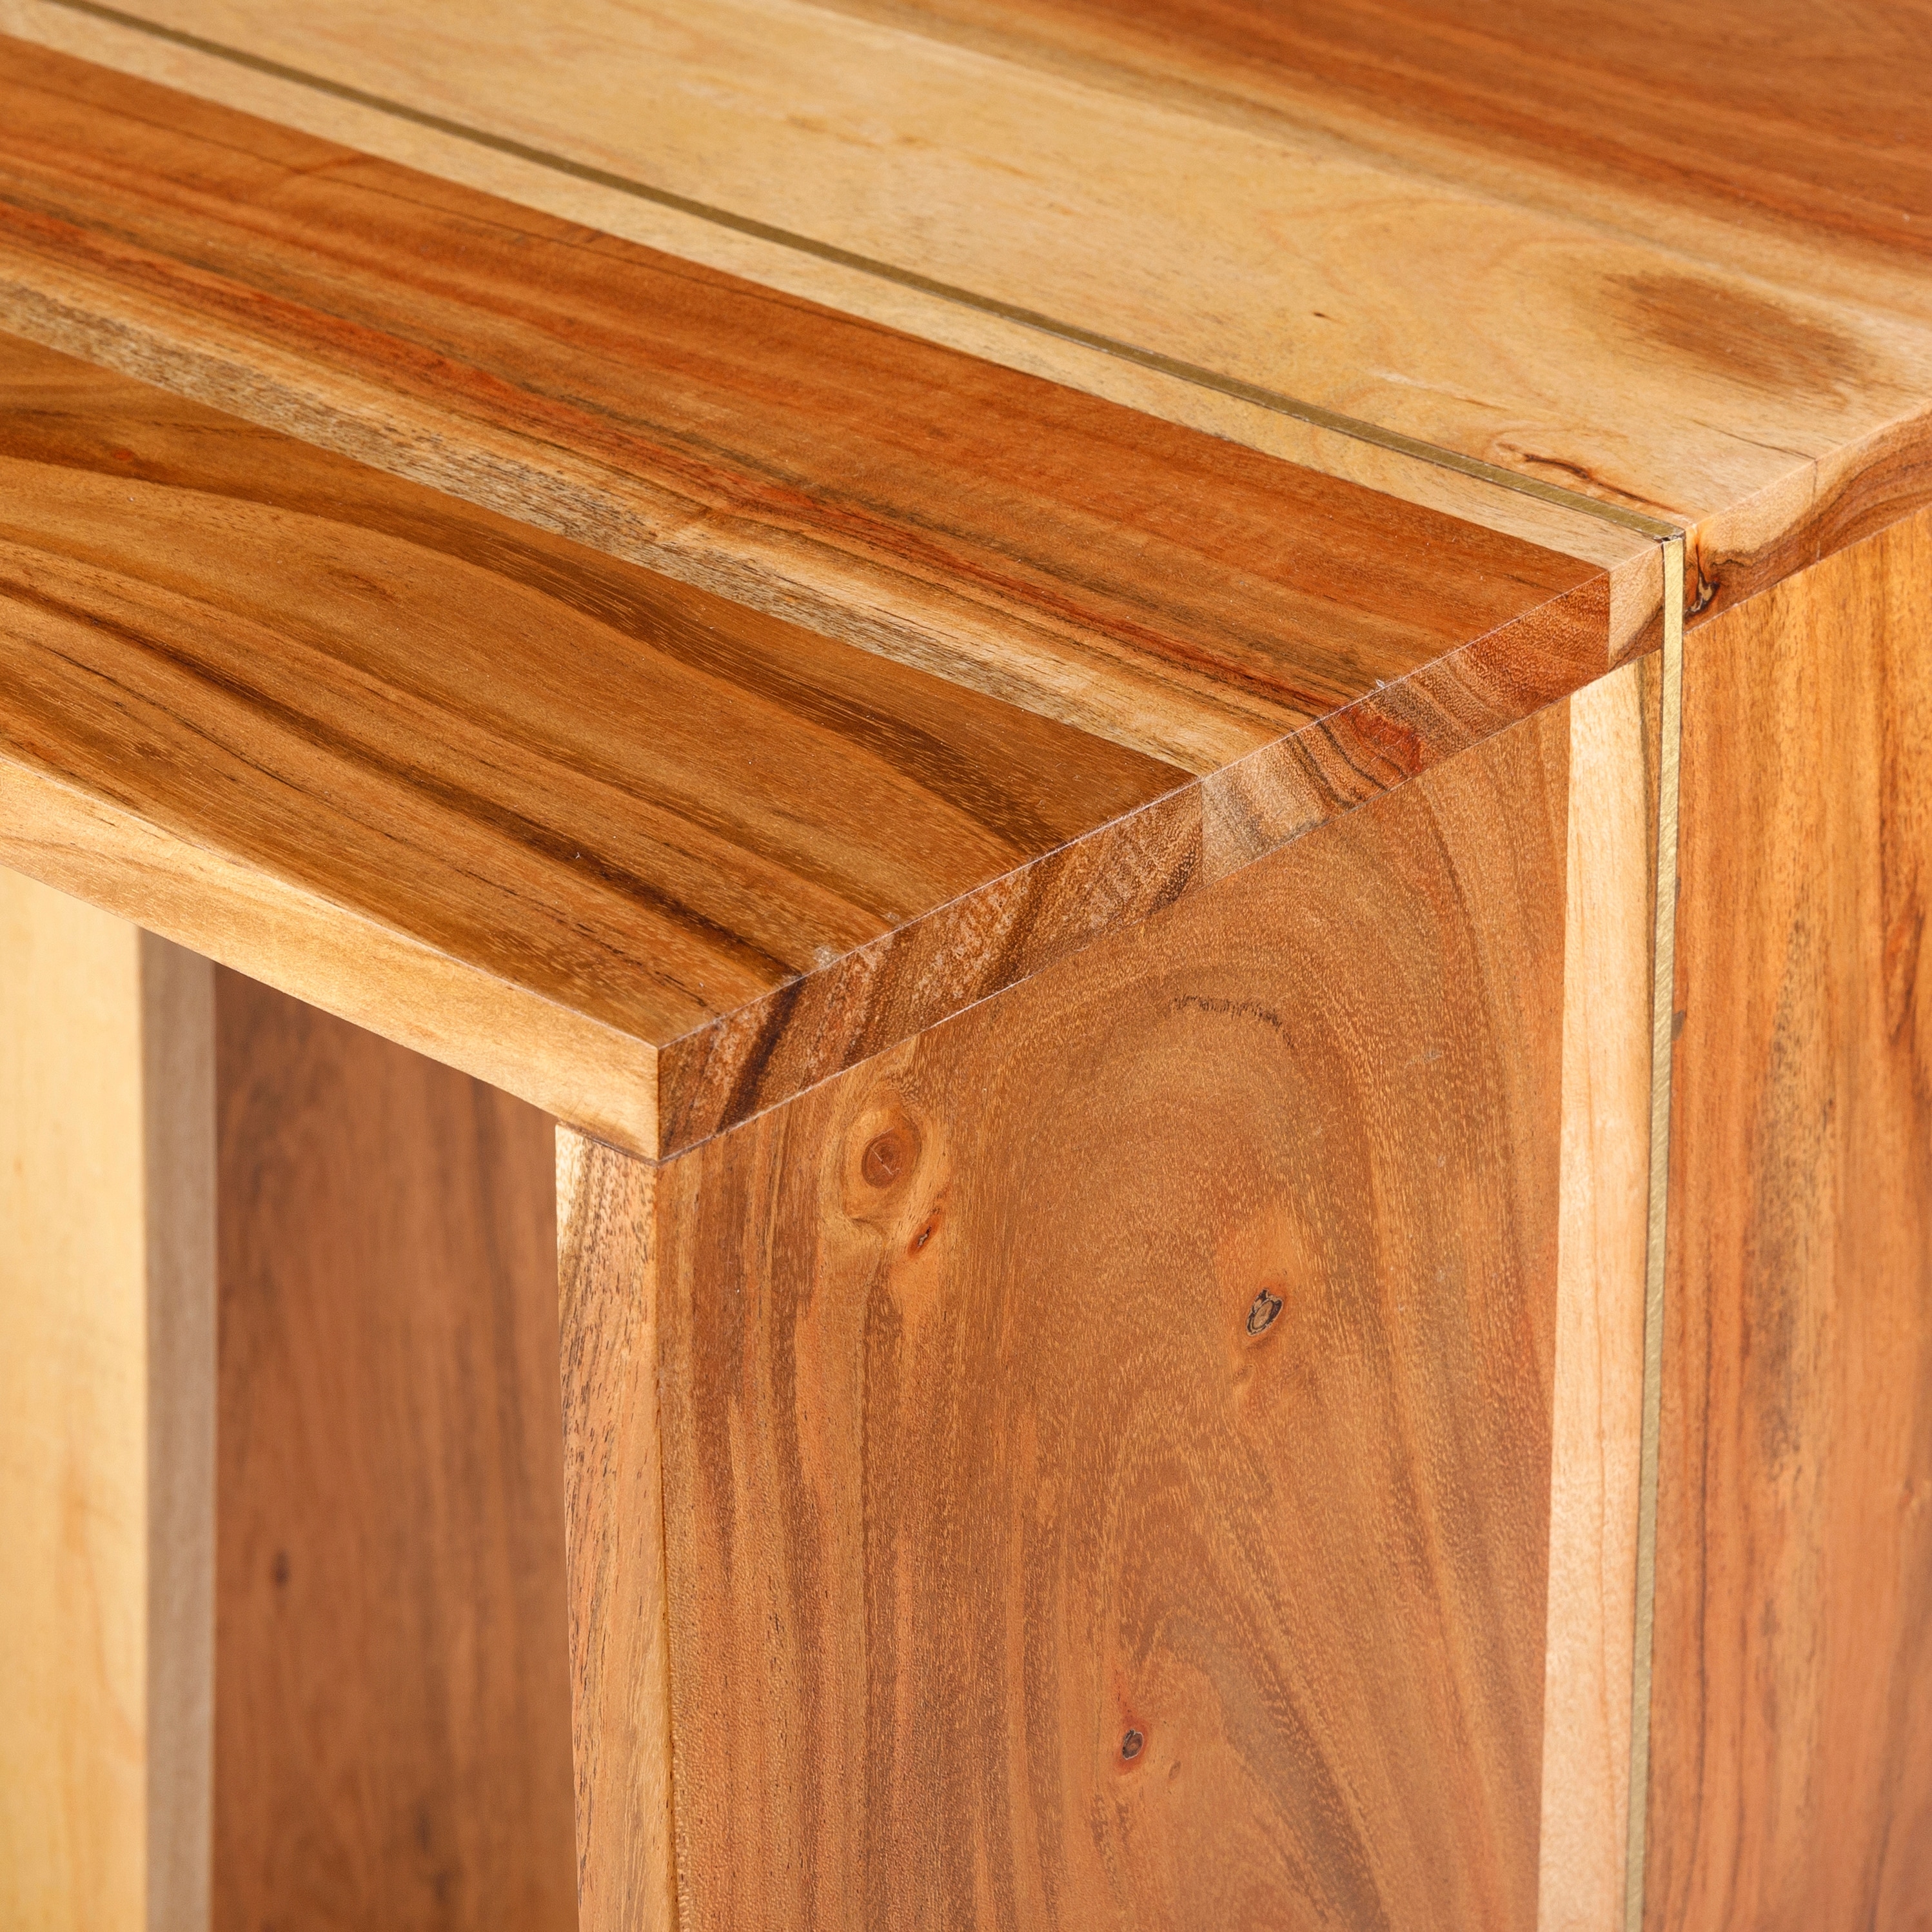 Hilding Minimalist Wood End Table - 20"H x 15"W x 16"D